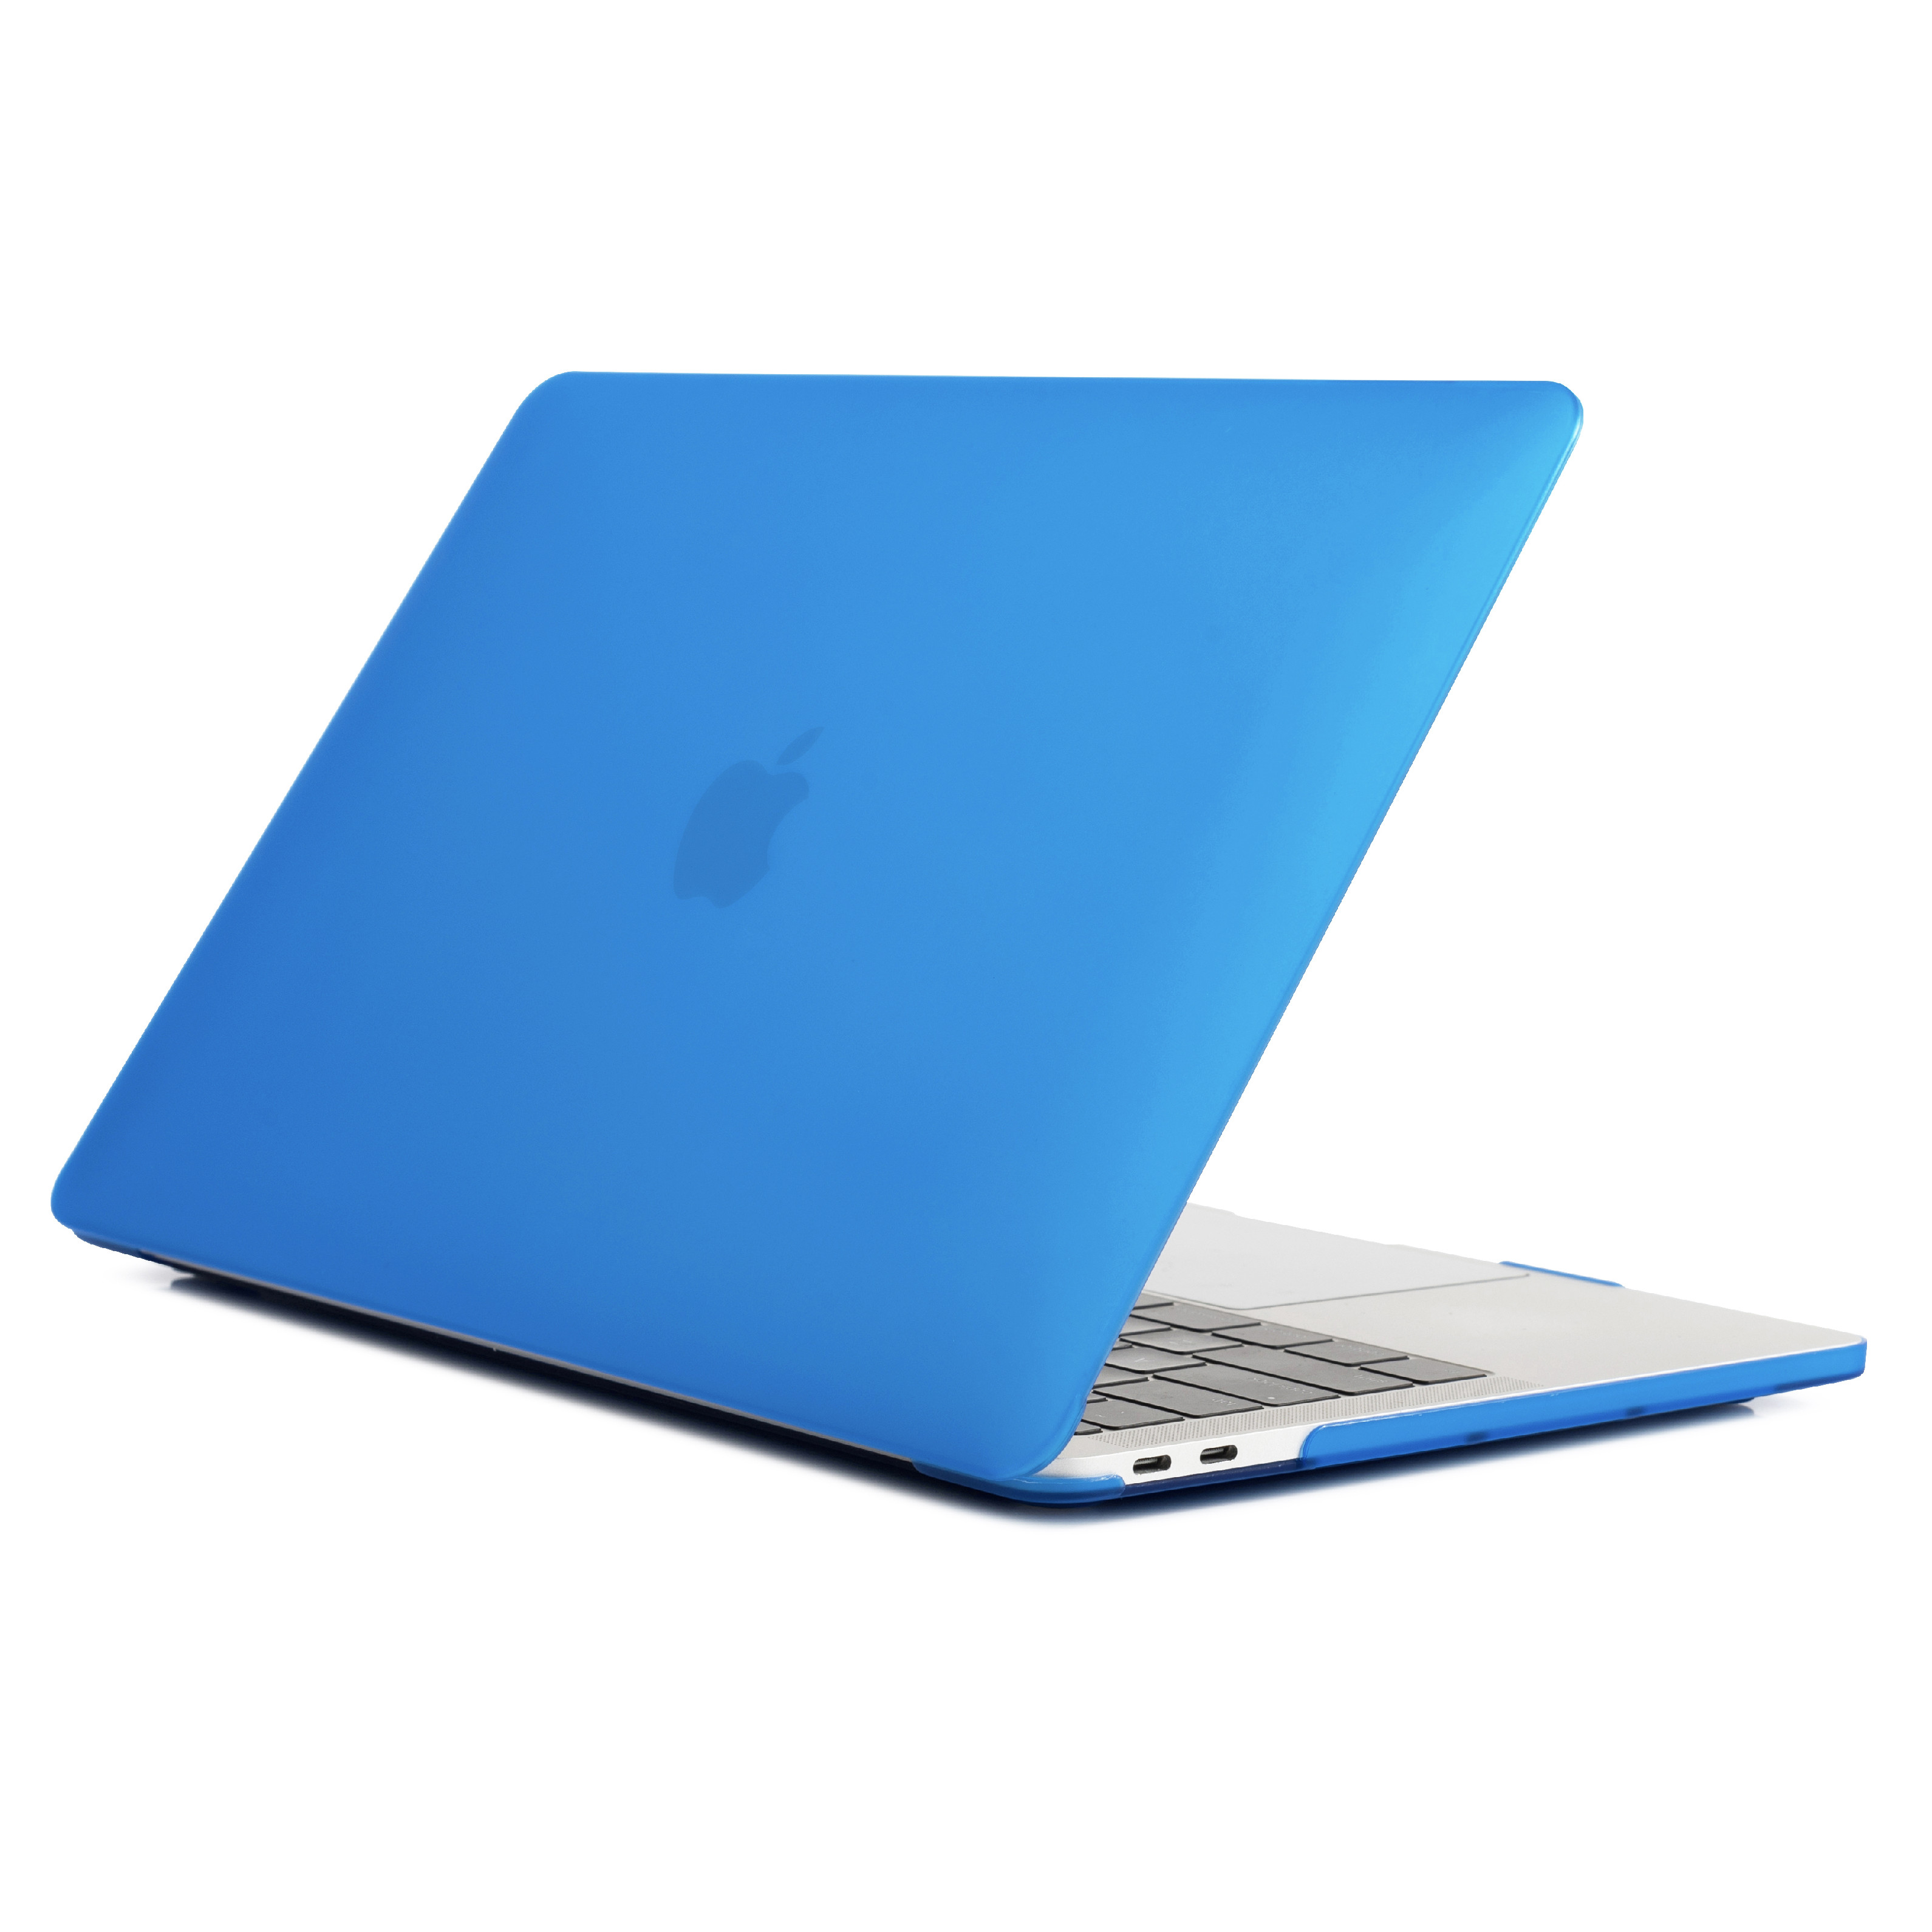 iPouzdro.cz pro MacBook Air 13 (2010-2017) 2222221000067 modrá